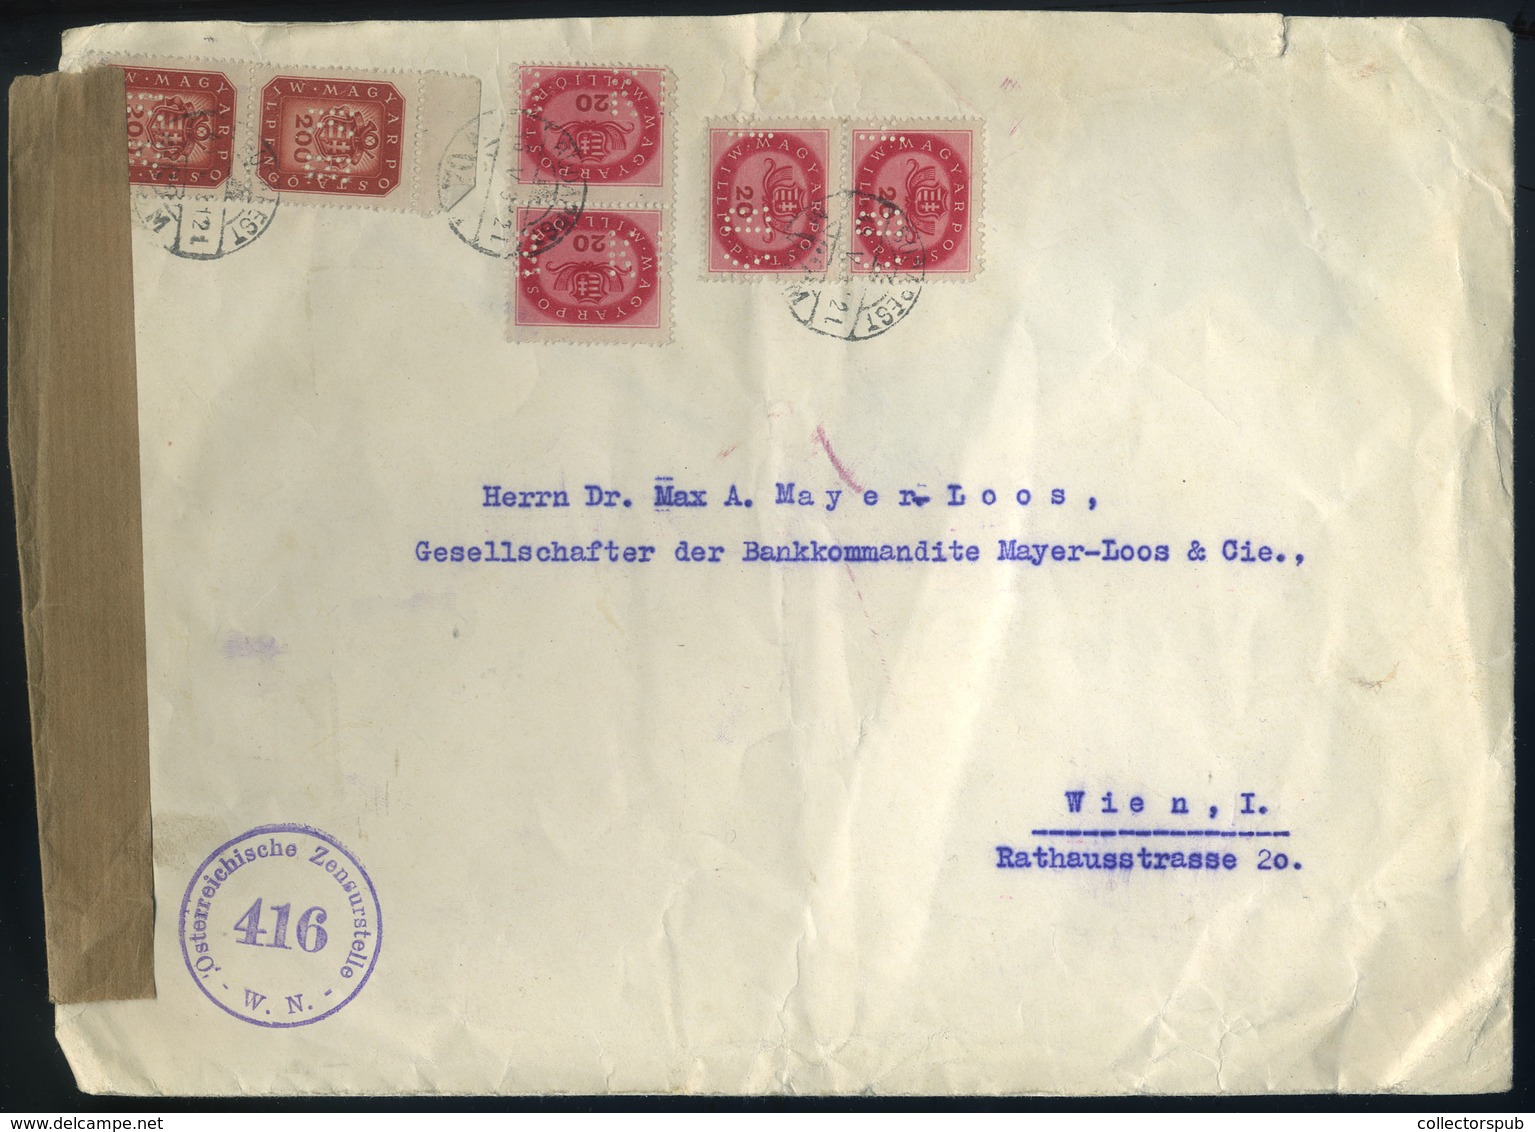 BUDAPEST 1946. (17. Dsz. Utolsó Nap) Cenzúrázott Levél, Céglyukasztásos Bélyegekkel Bécsbe Küldve. Ritka! - Covers & Documents